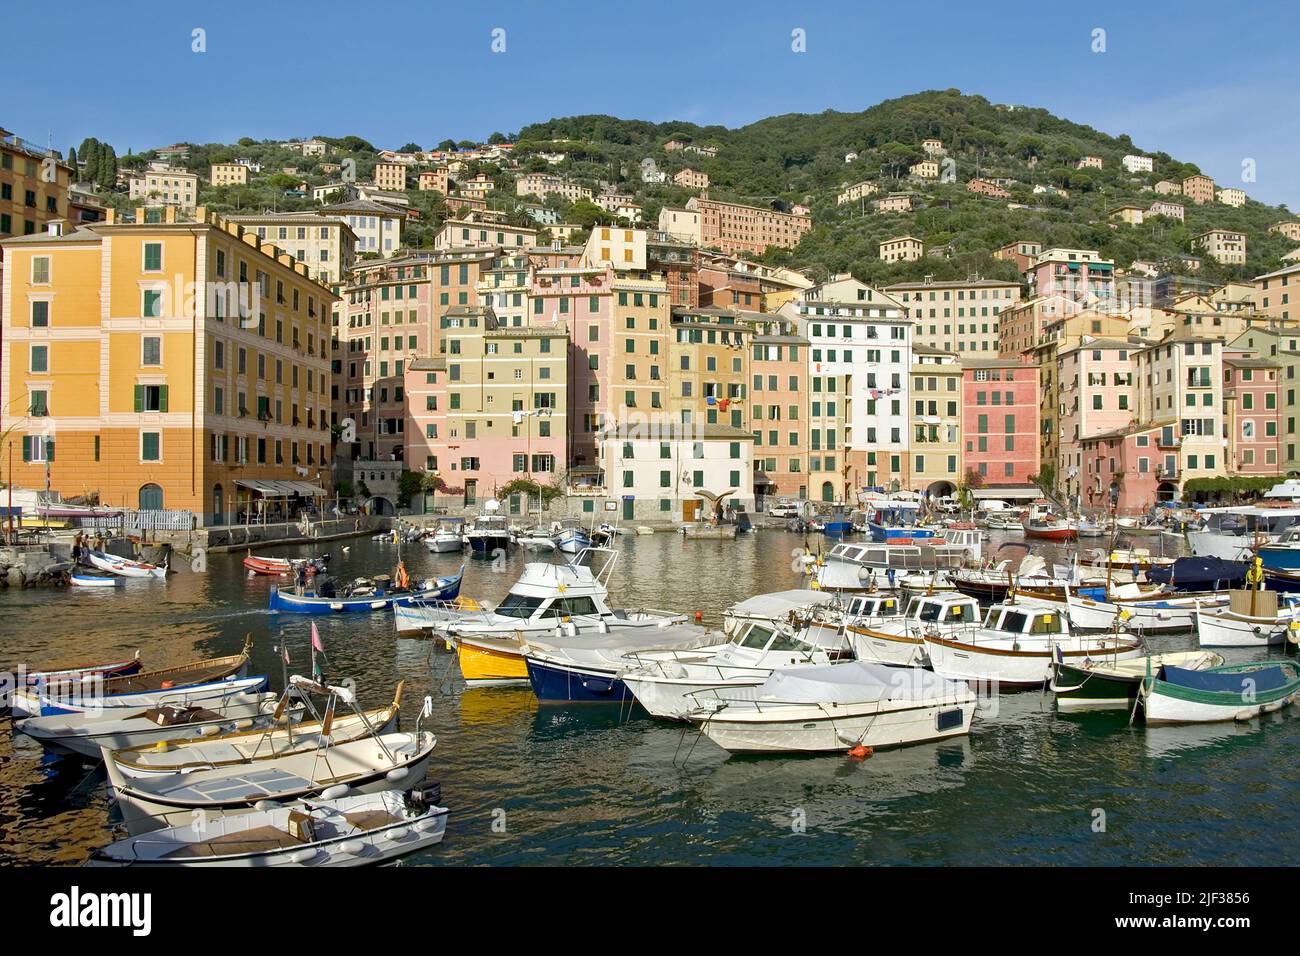 Blick ueber den Hafen von Camogli an der ligurischen Kueste, Italia, Liguria, Camogli Foto Stock